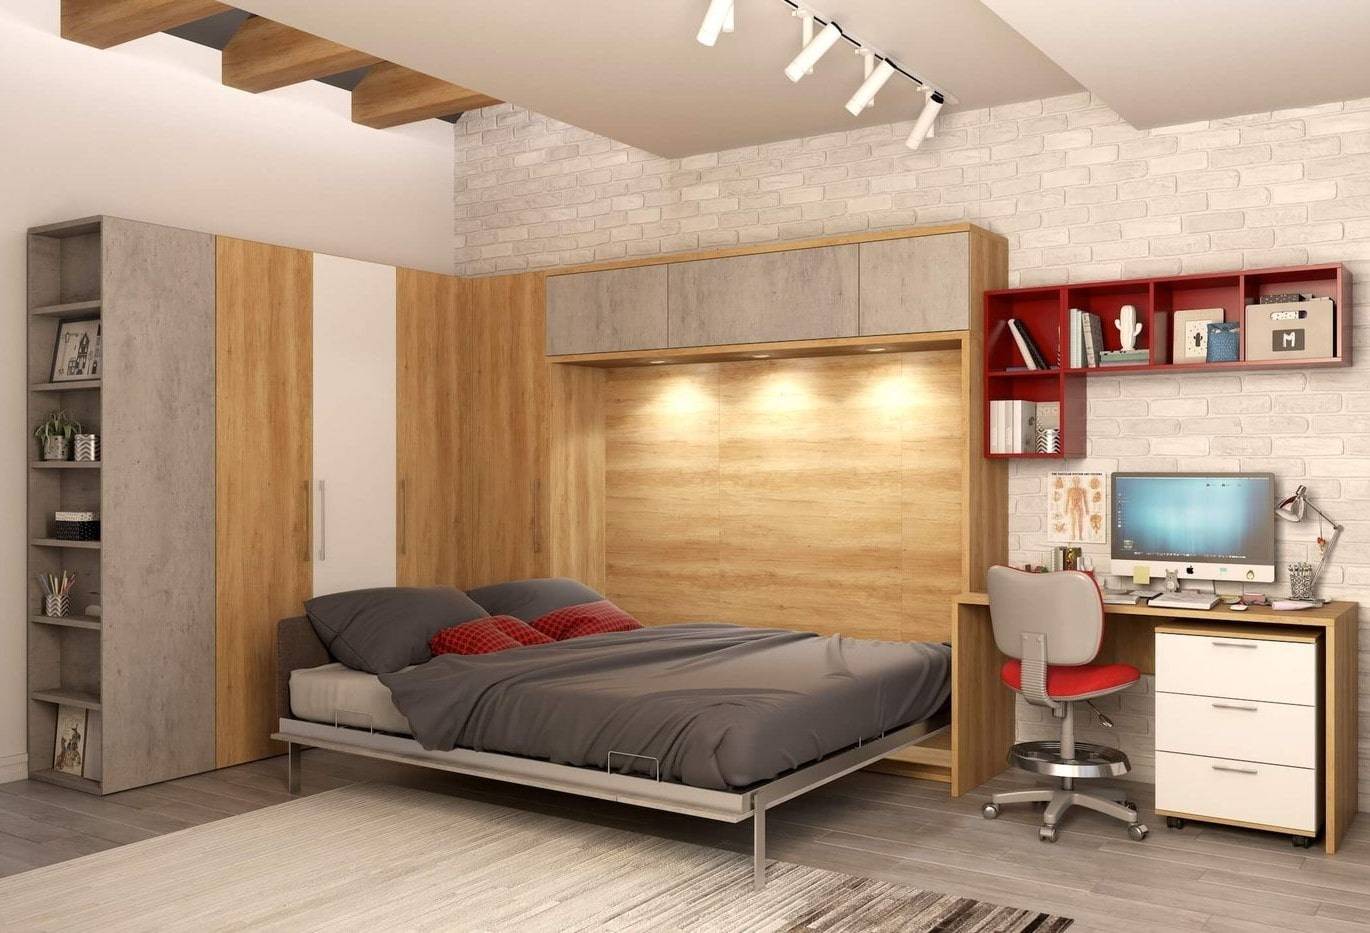 Шкаф-диван-кровать-трансформер – идеальное решение для малогабаритных квартир